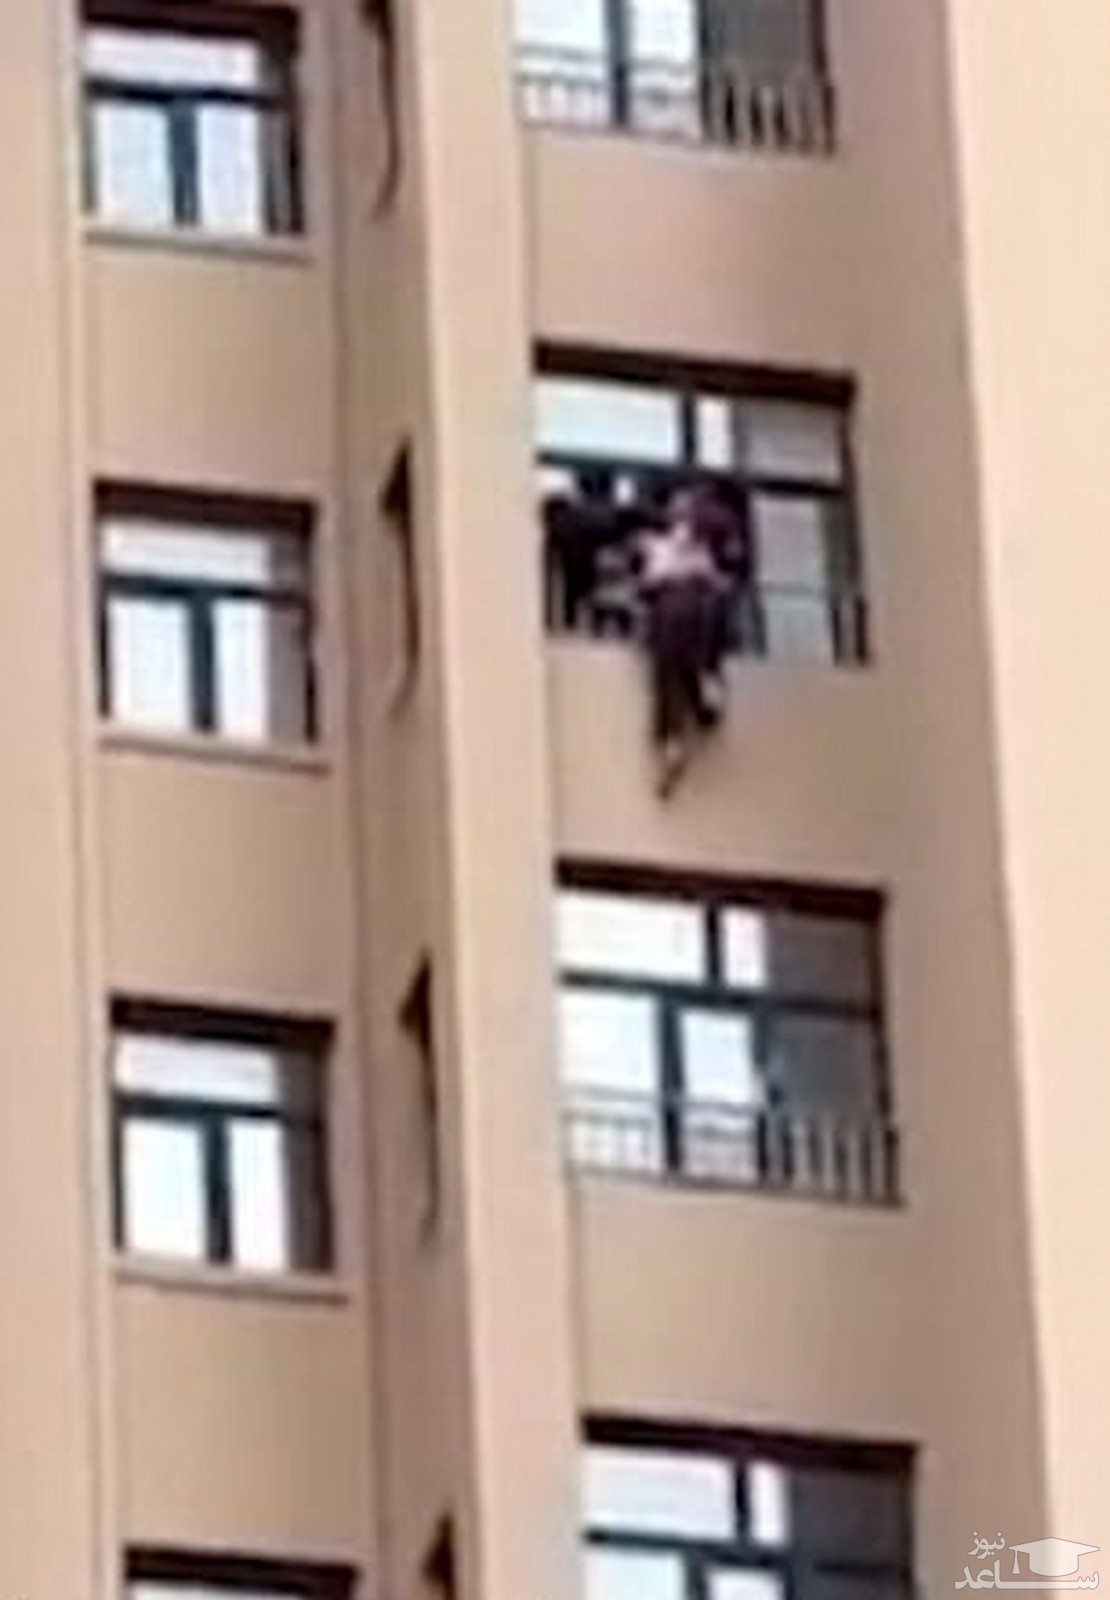 (فیلم) نجات پیرزن درحال سقوط از طبقه دوازدهم